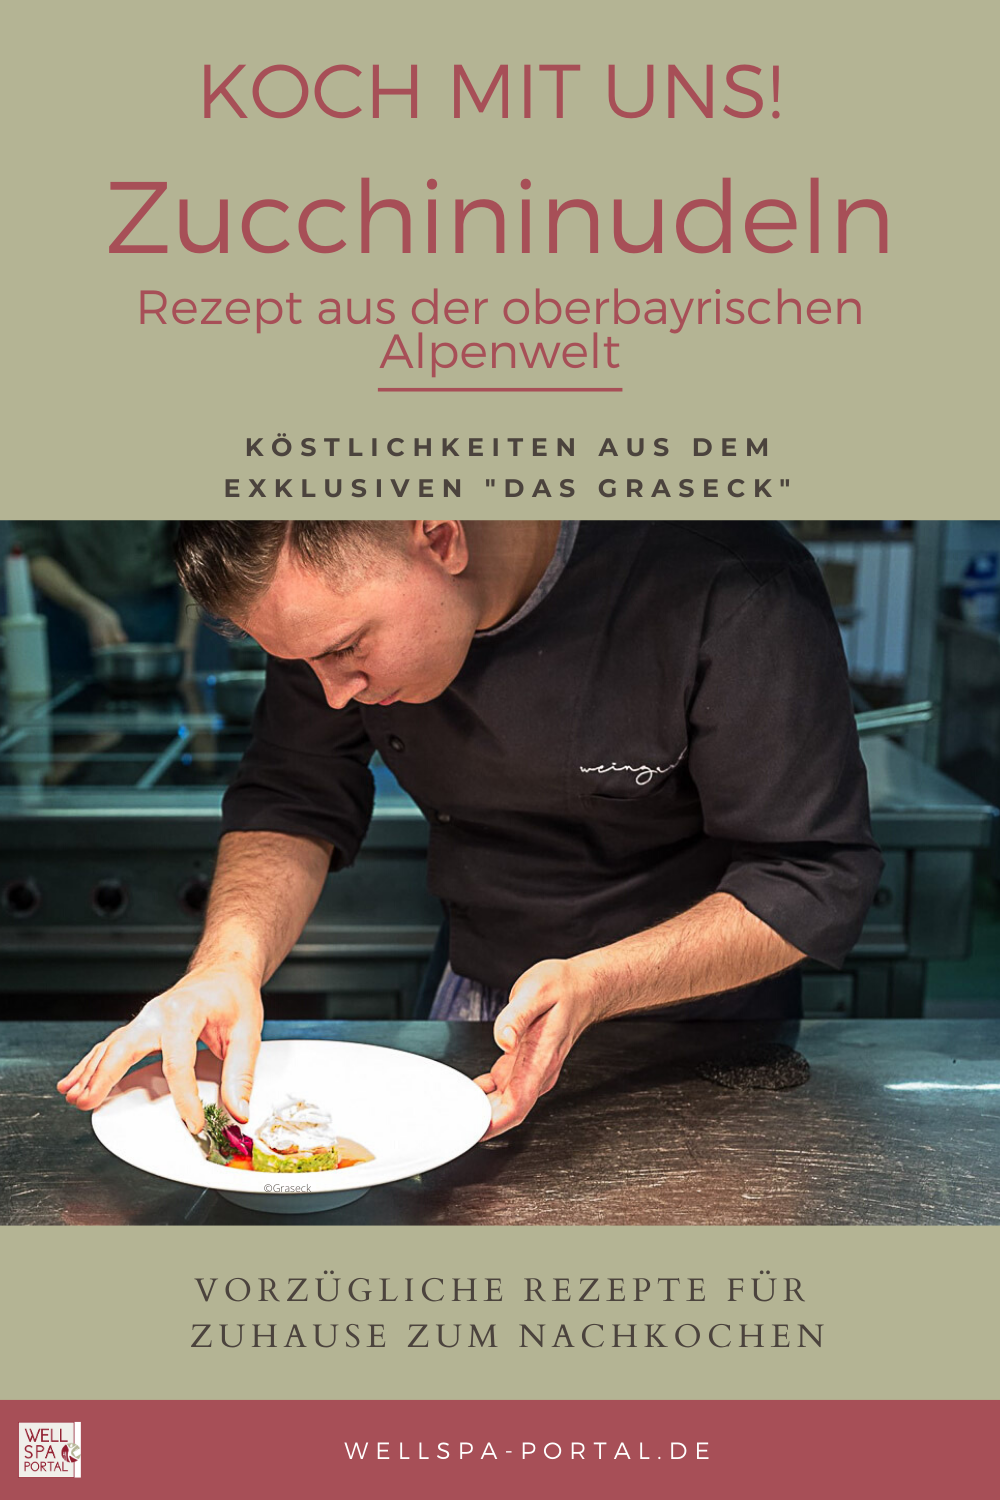 Zucchininudel Rezept aus der bayrischen Bergwelt hoch über Garmisch-Partenkirchen. Köstlichkeiten aus der Küche des Das Graseck zum Nachkochen für zuhause.